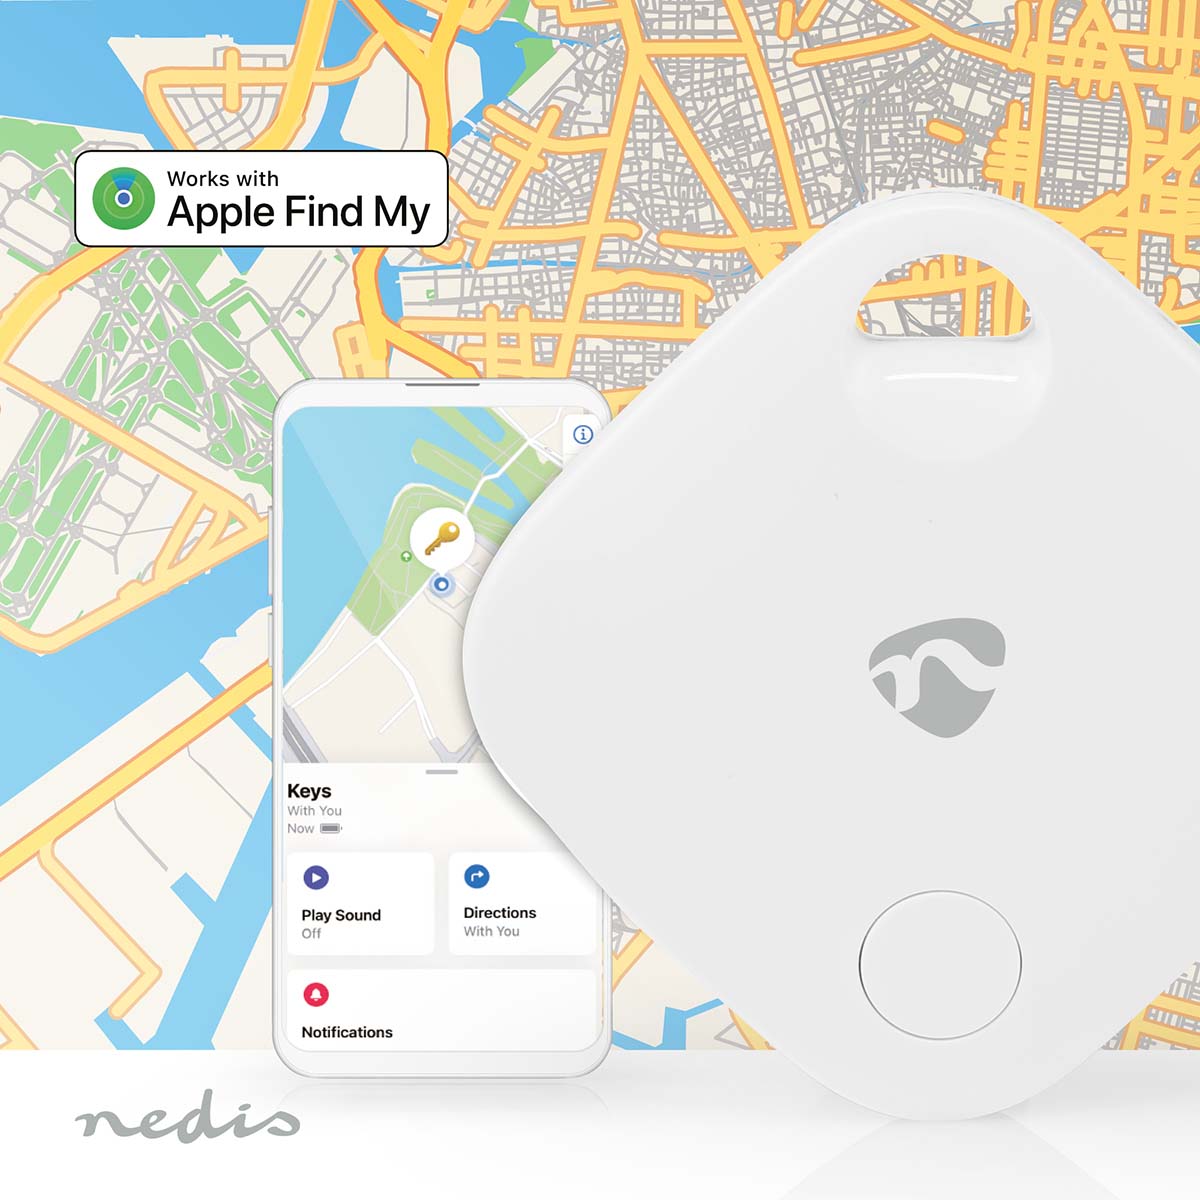 Schlüsselfinder Tracker Bluetooth Geräteortung Lokal und Global mit App Anhänger